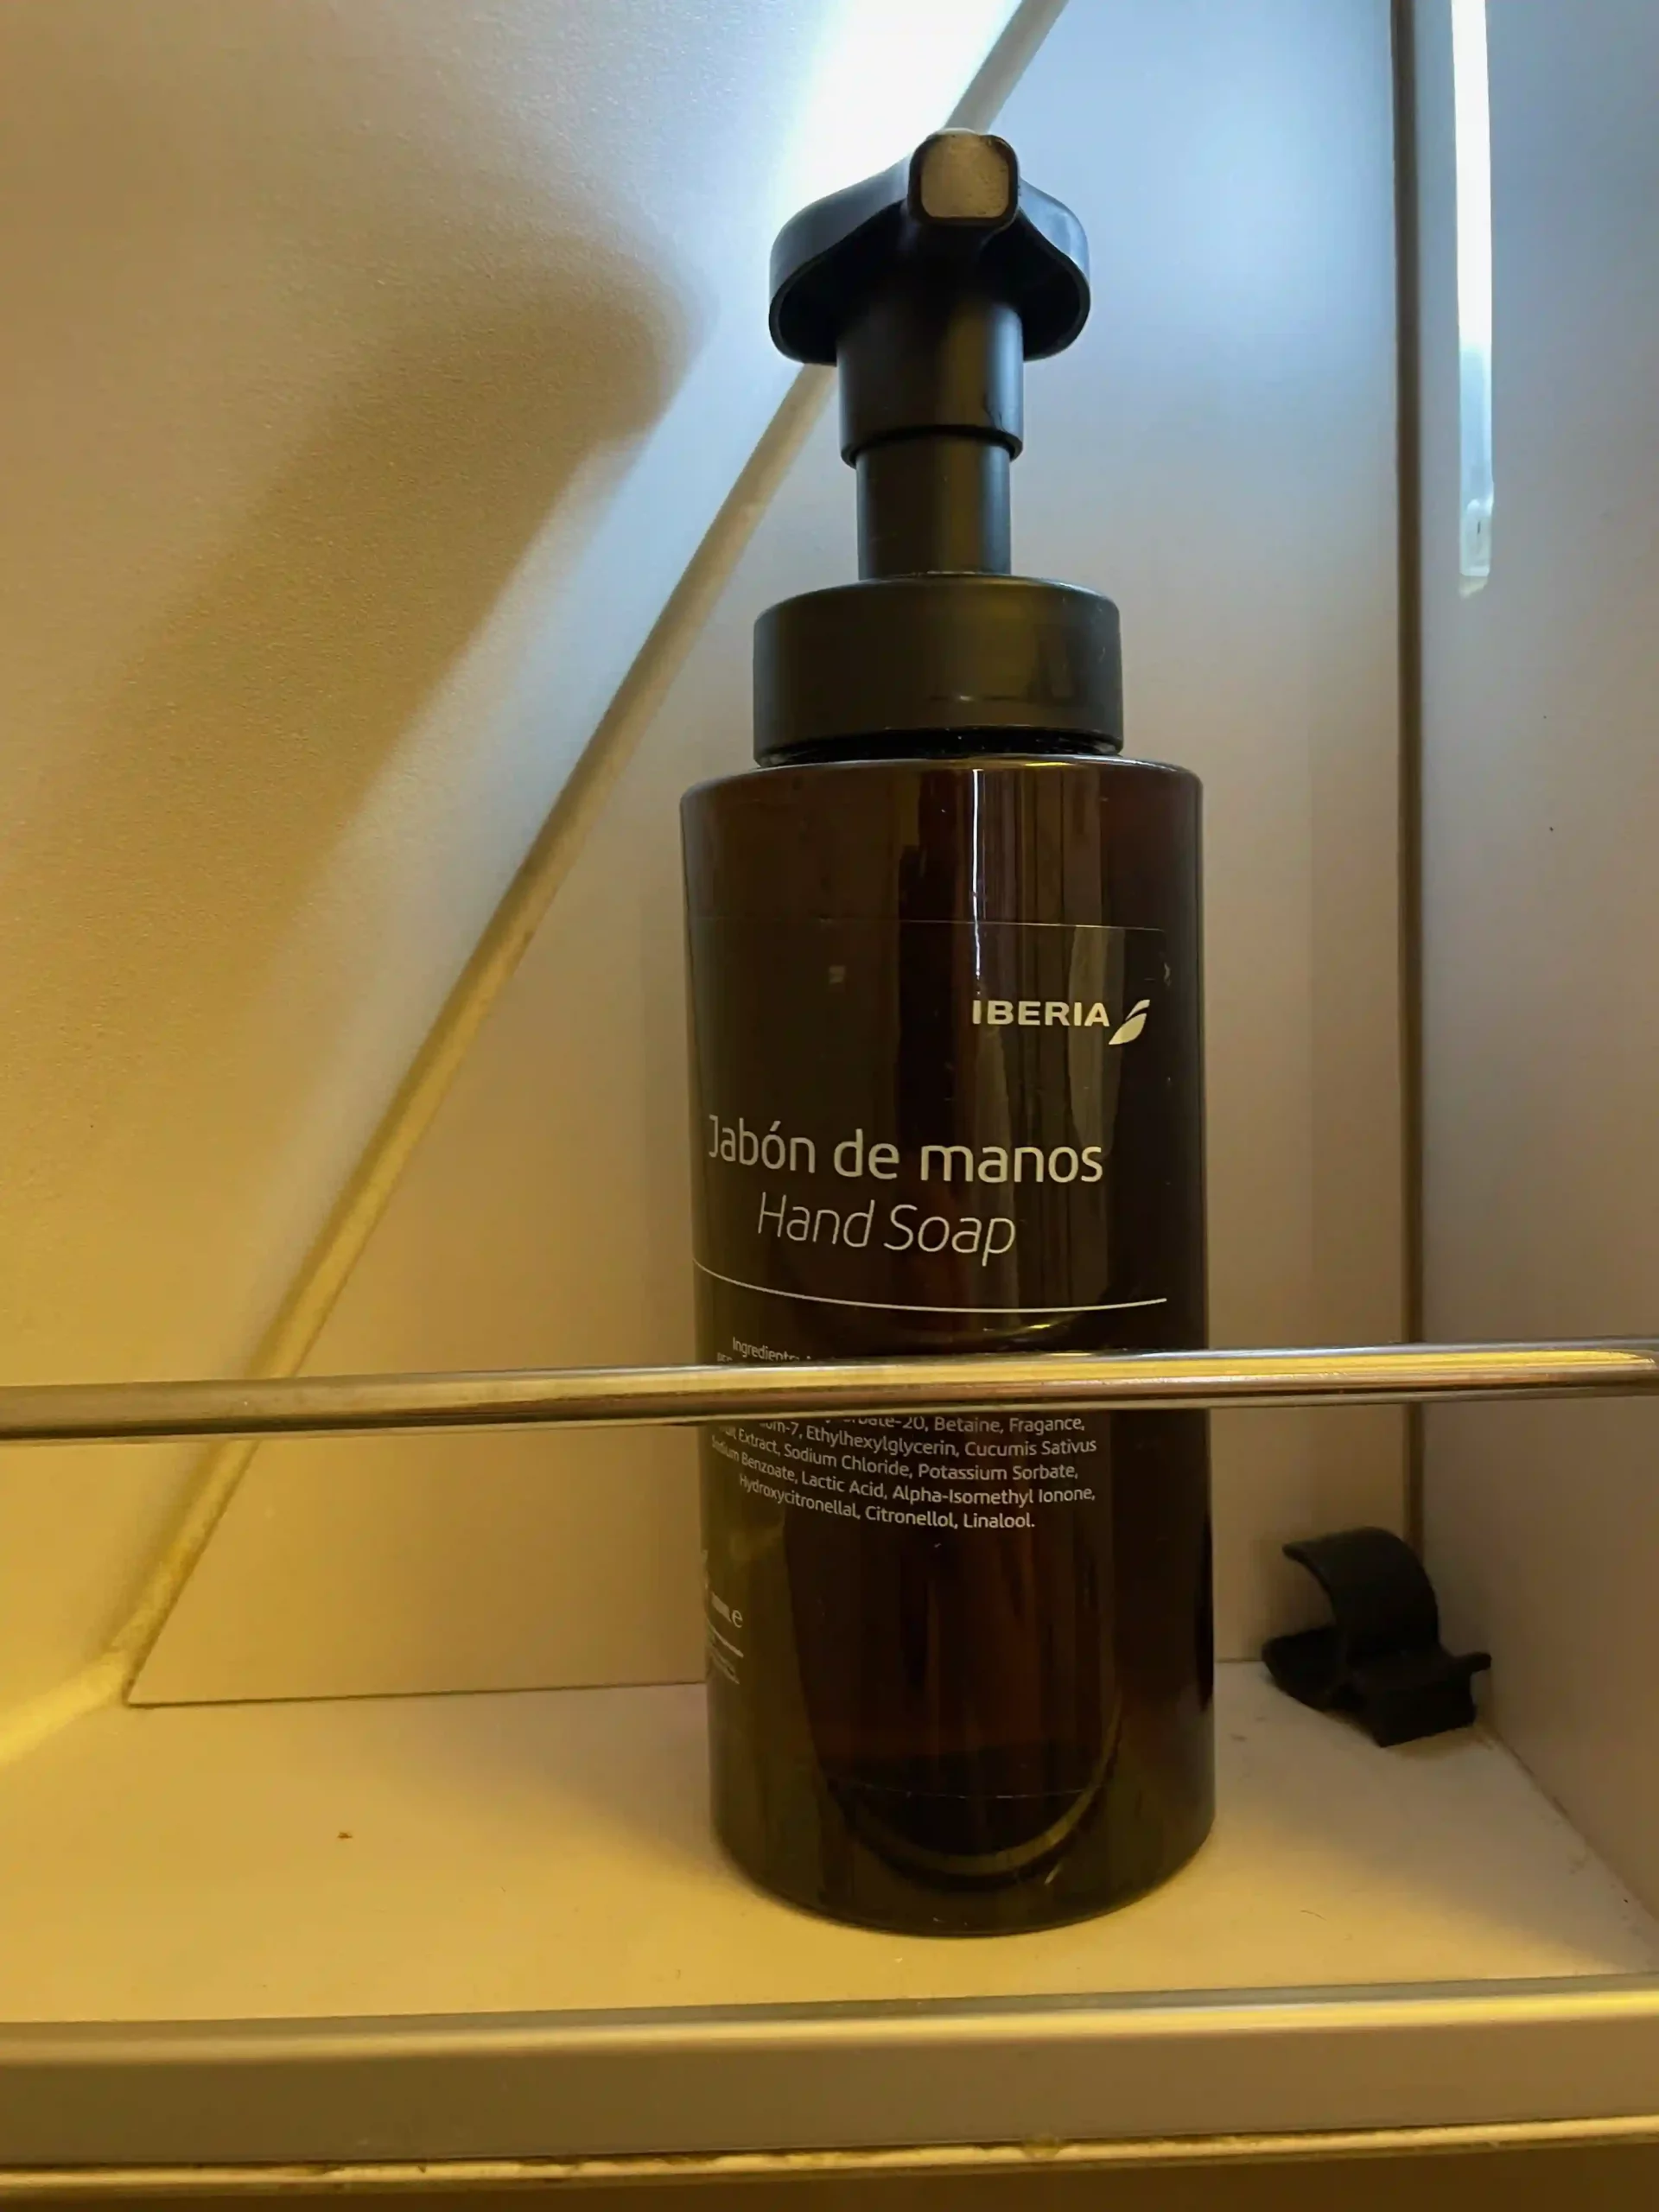 a bottle of soap on a shelf